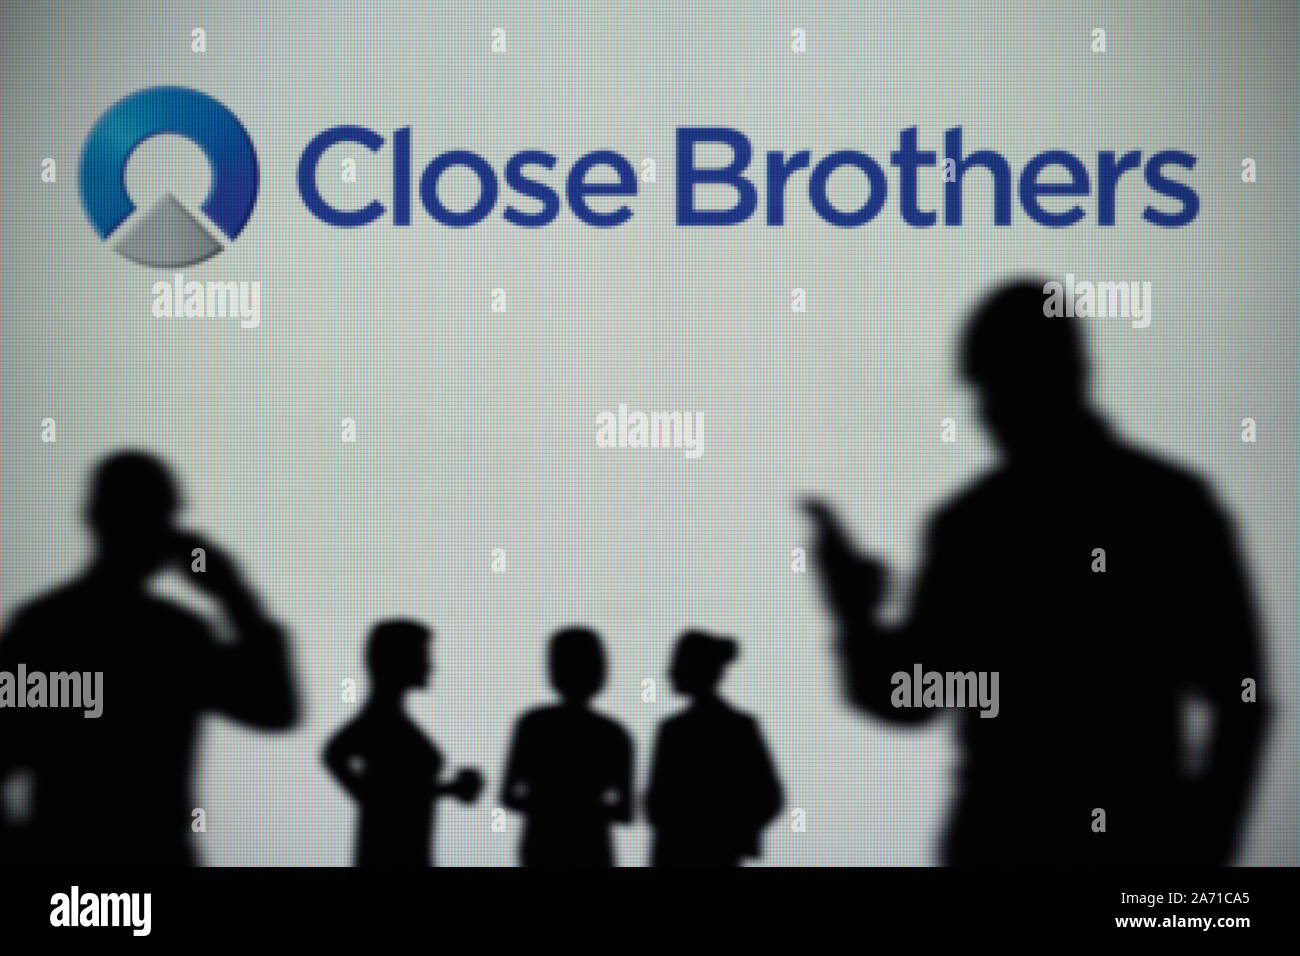 Le logo du groupe Close Brothers est vu sur un écran LED à l'arrière-plan tandis qu'une silhouette personne utilise un smartphone (usage éditorial uniquement) Banque D'Images